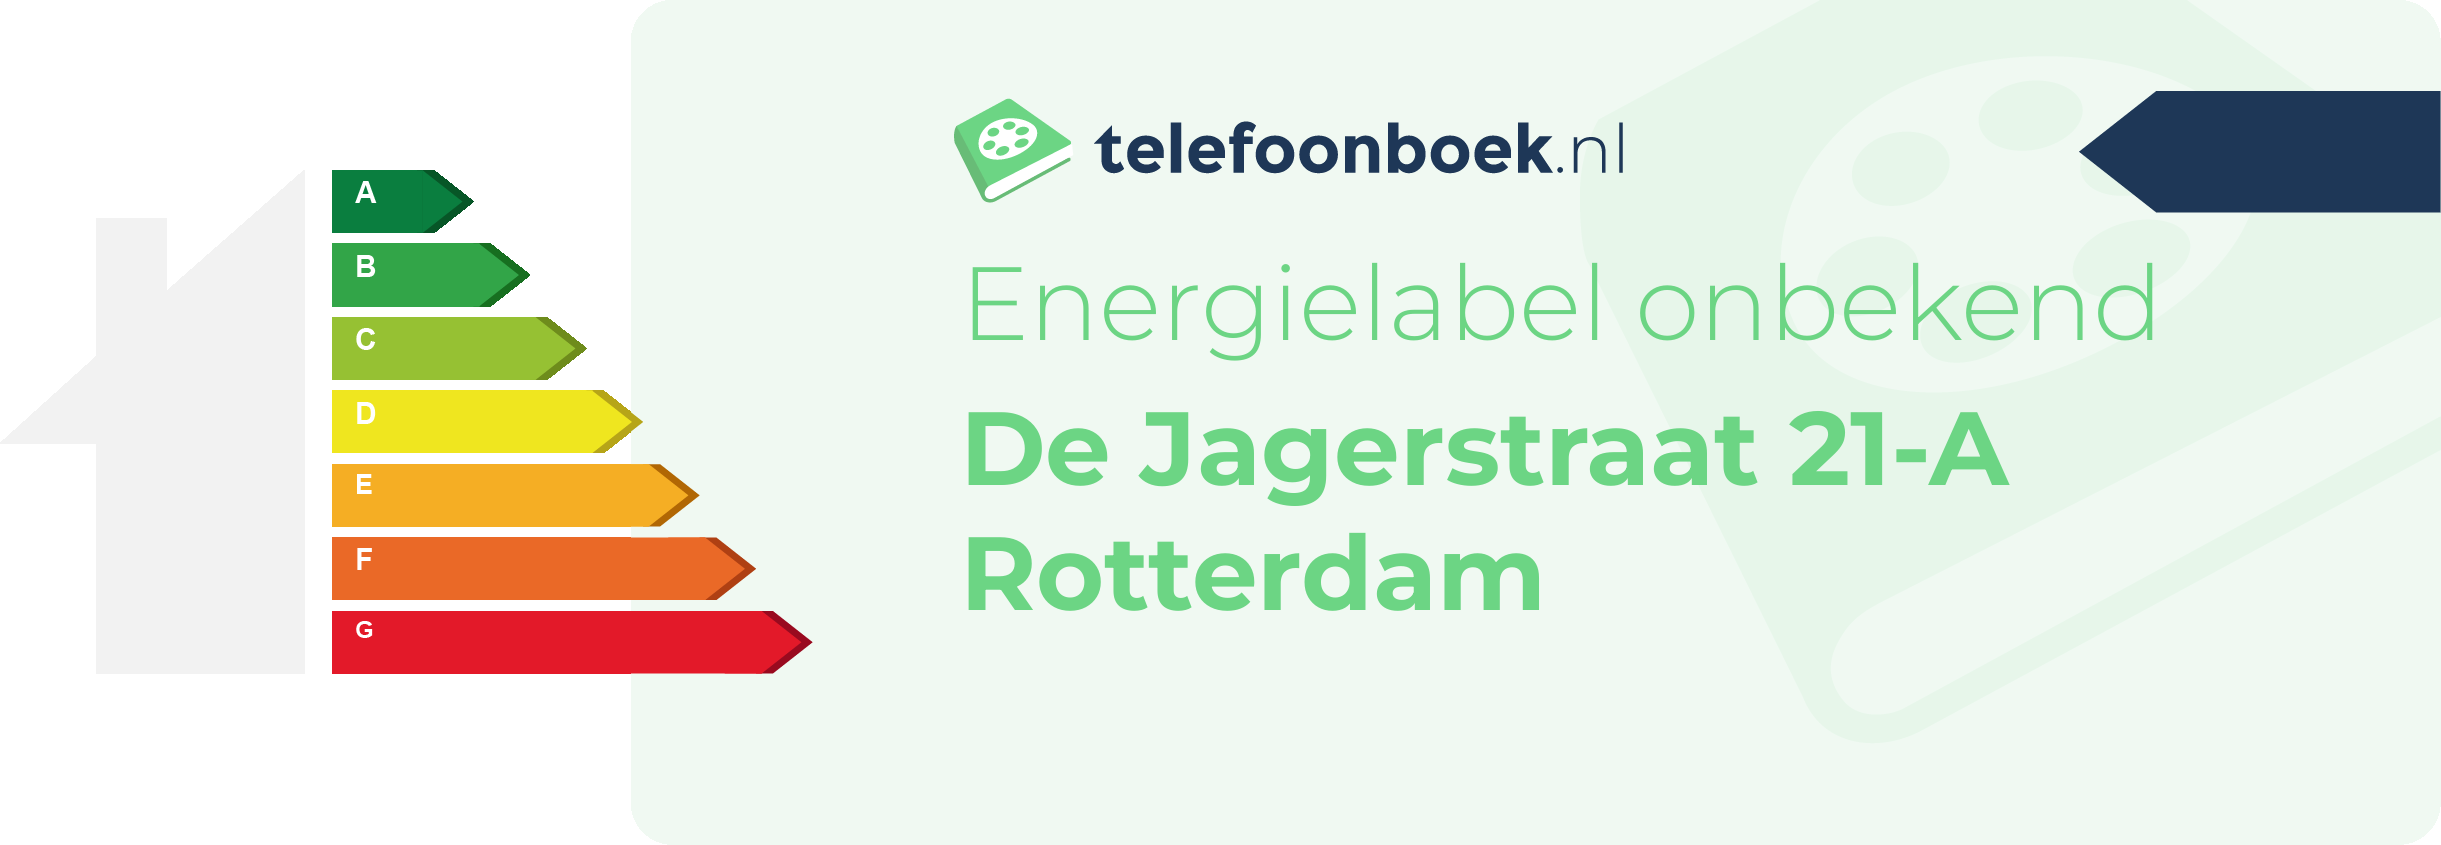 Energielabel De Jagerstraat 21-A Rotterdam